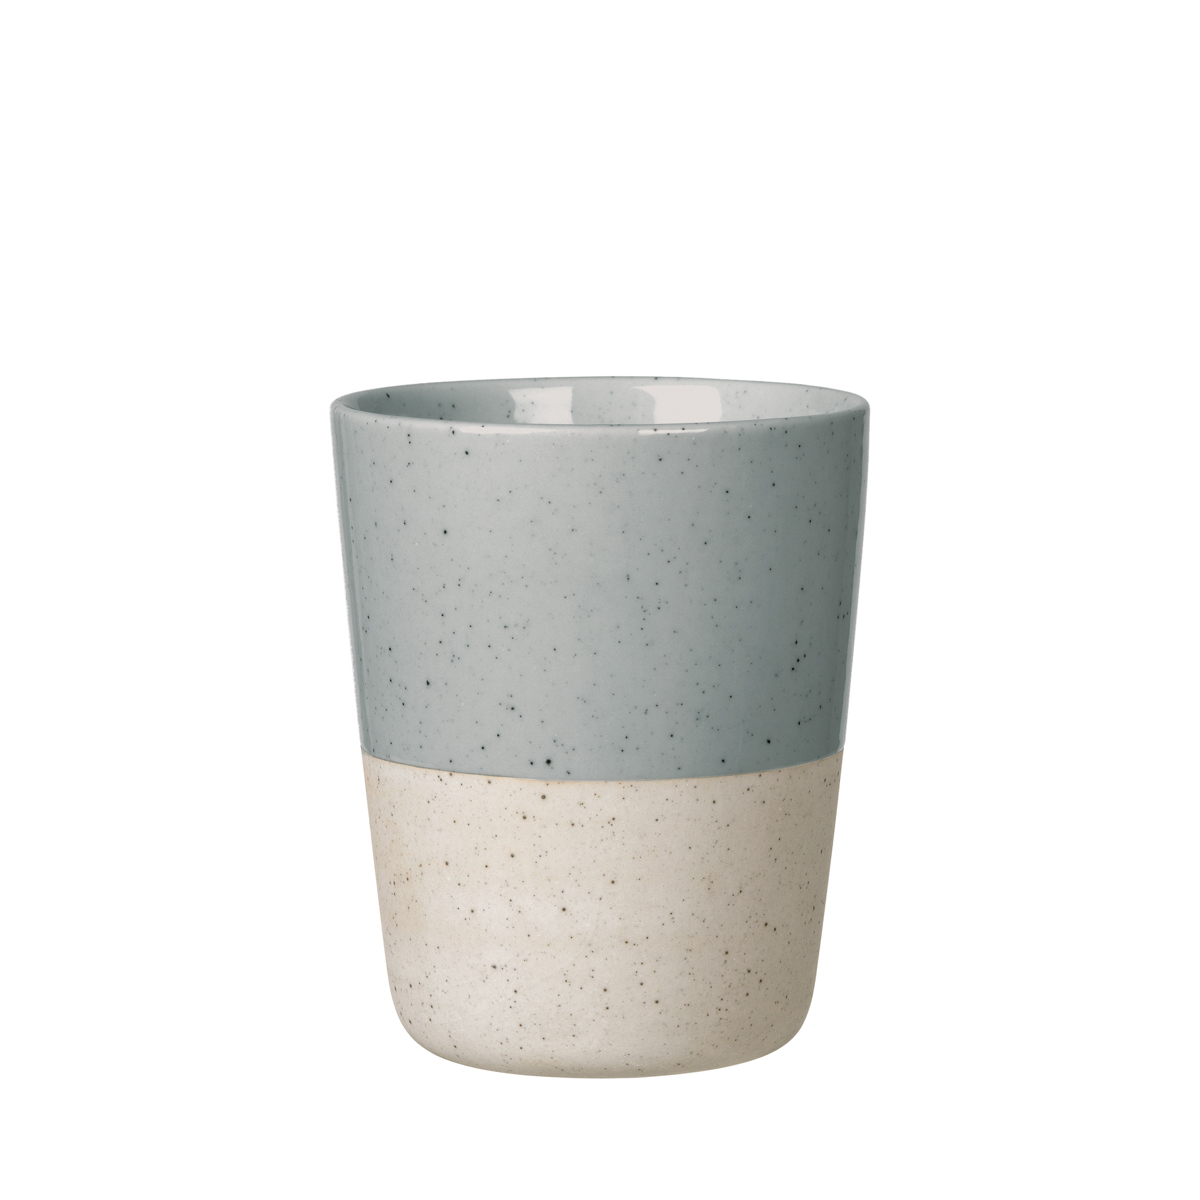 Becher -SABLO- Stone 250 ml, ohne henkel, Ø 8 cm. Material: Keramik. Von Blomus.